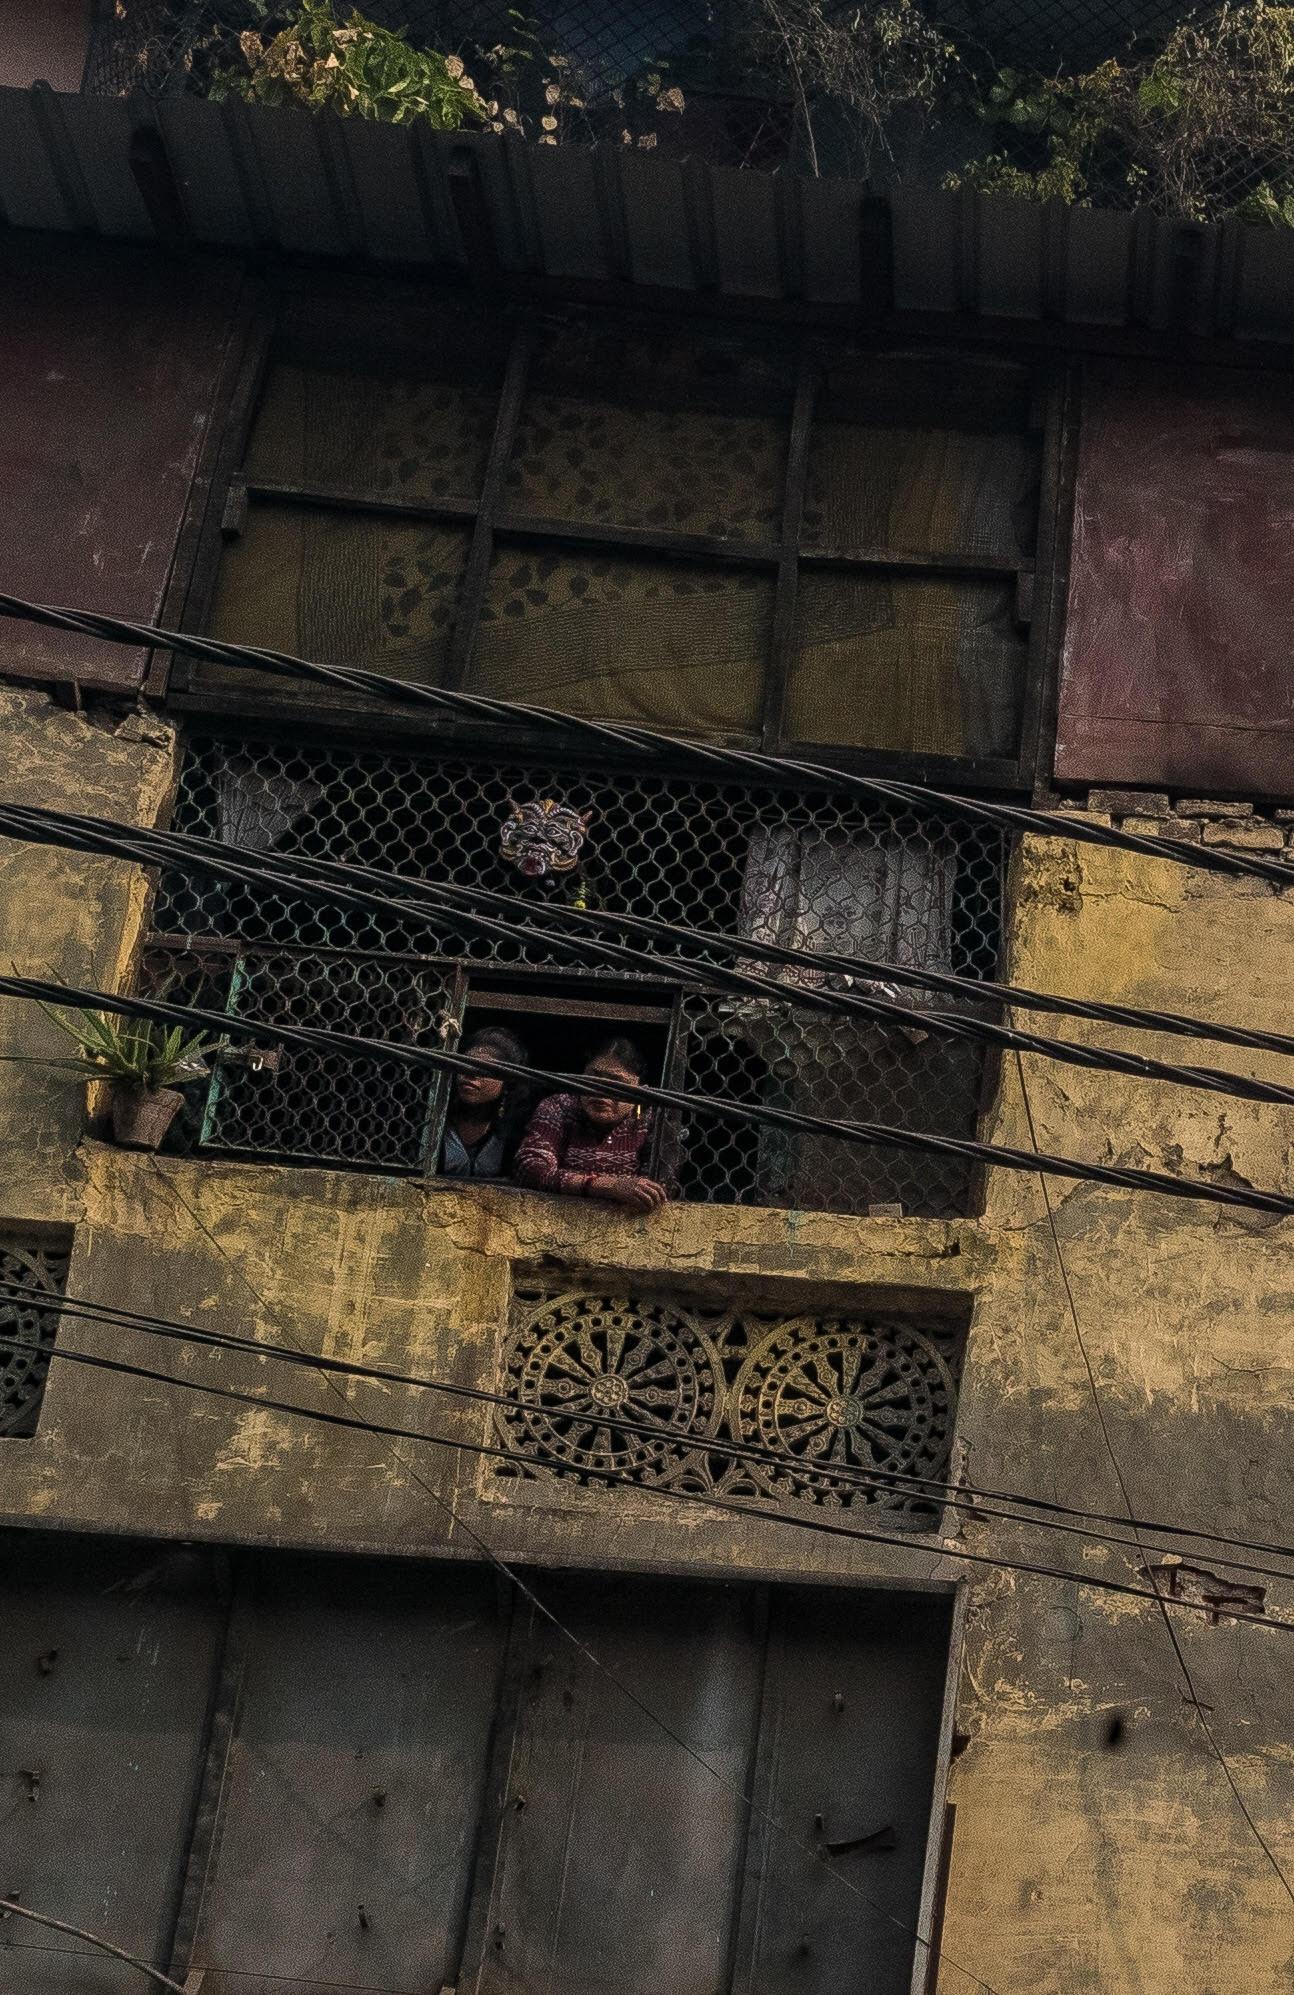 Överallt i fönstren står unga flickor och försöker att locka till sig män. Uppemot 11000 kvinnor och barn jobbar i Indiens största bordellområde.